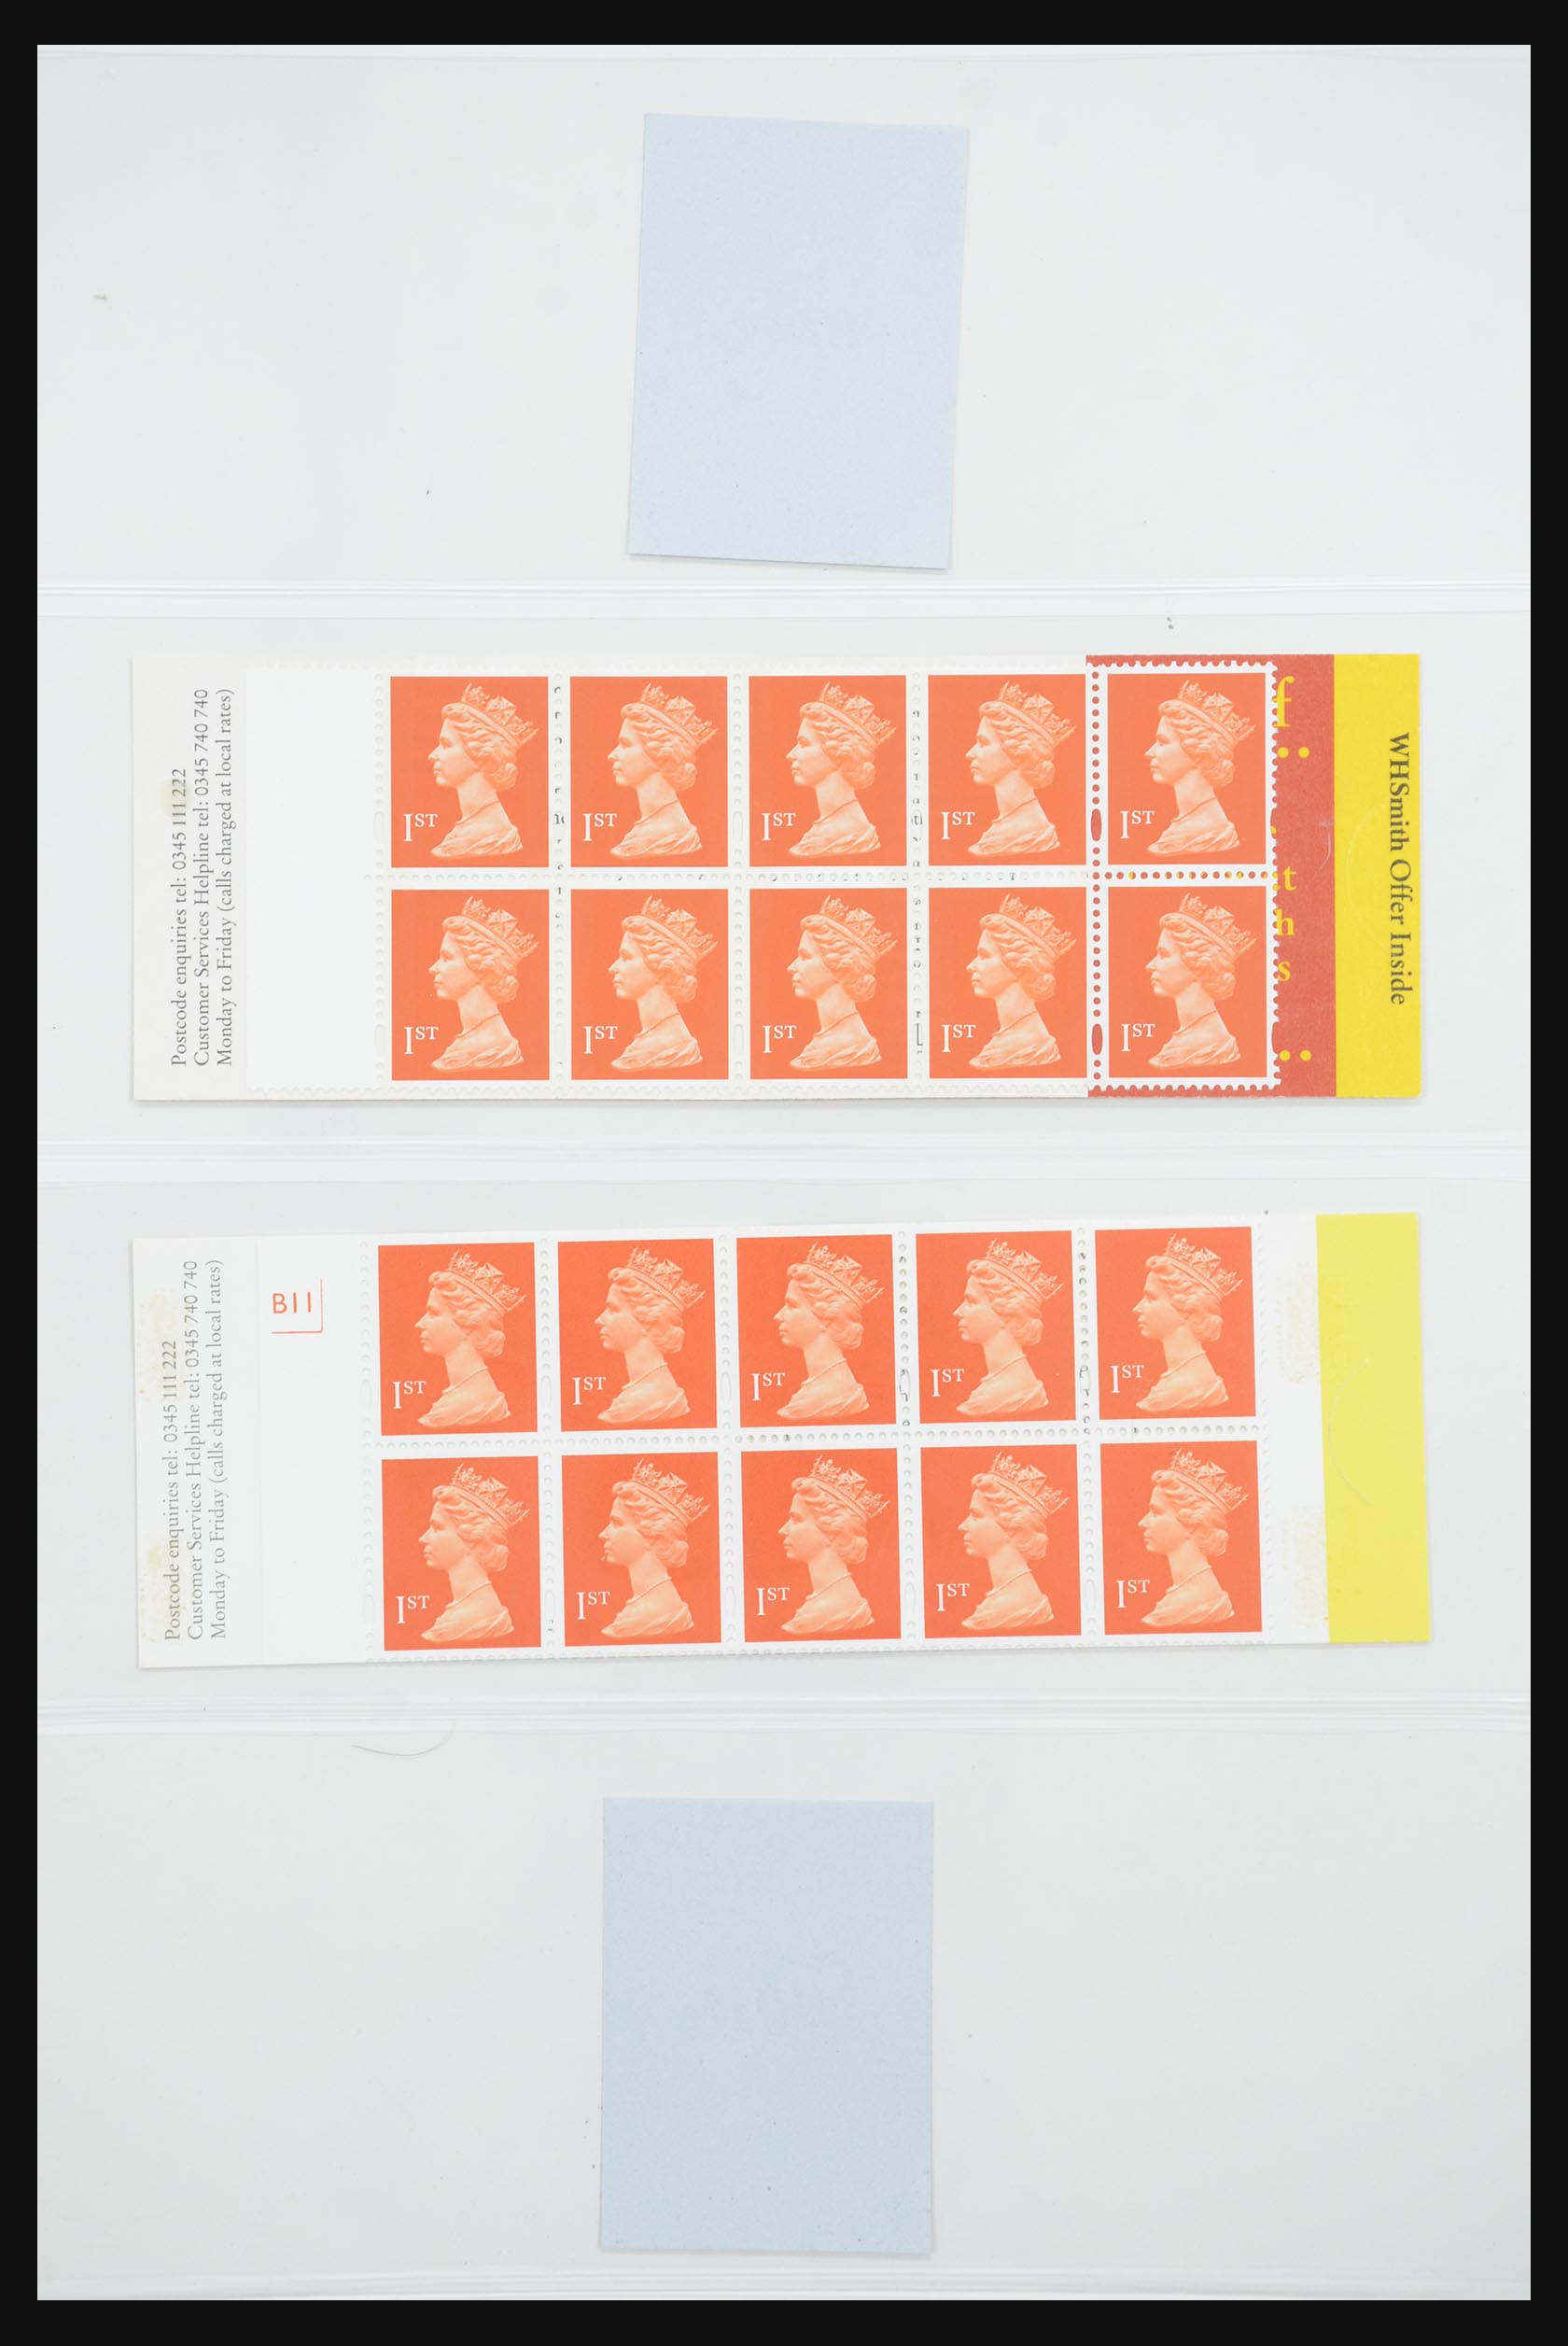 31960 150 - 31960 Engeland postzegelboekjes 1989-2000.